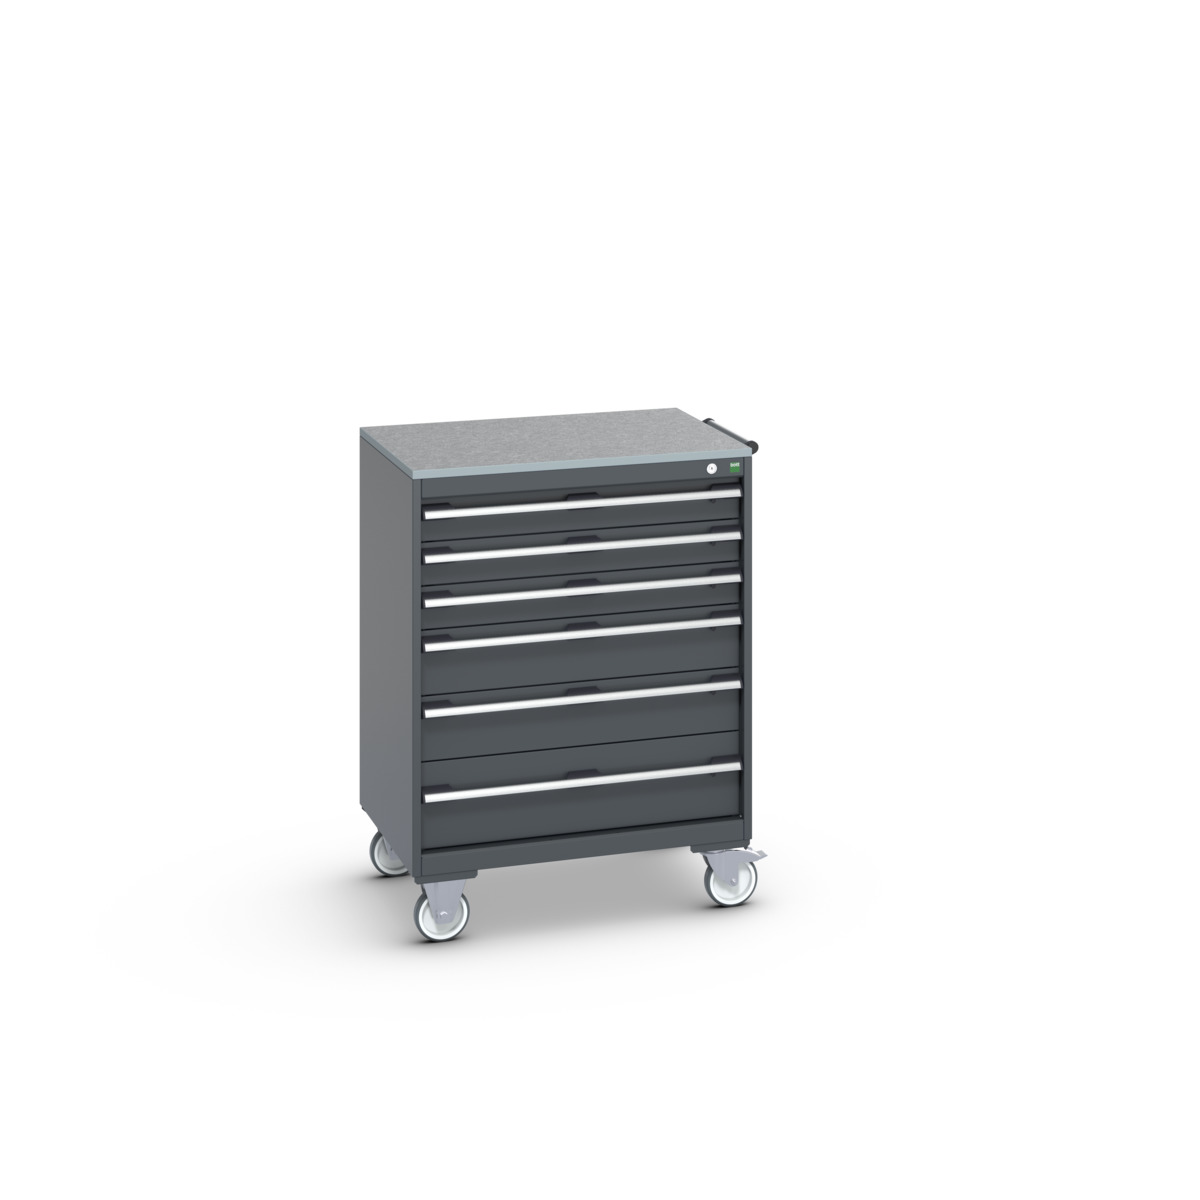 40402160.77V - cubio mobile cabinet